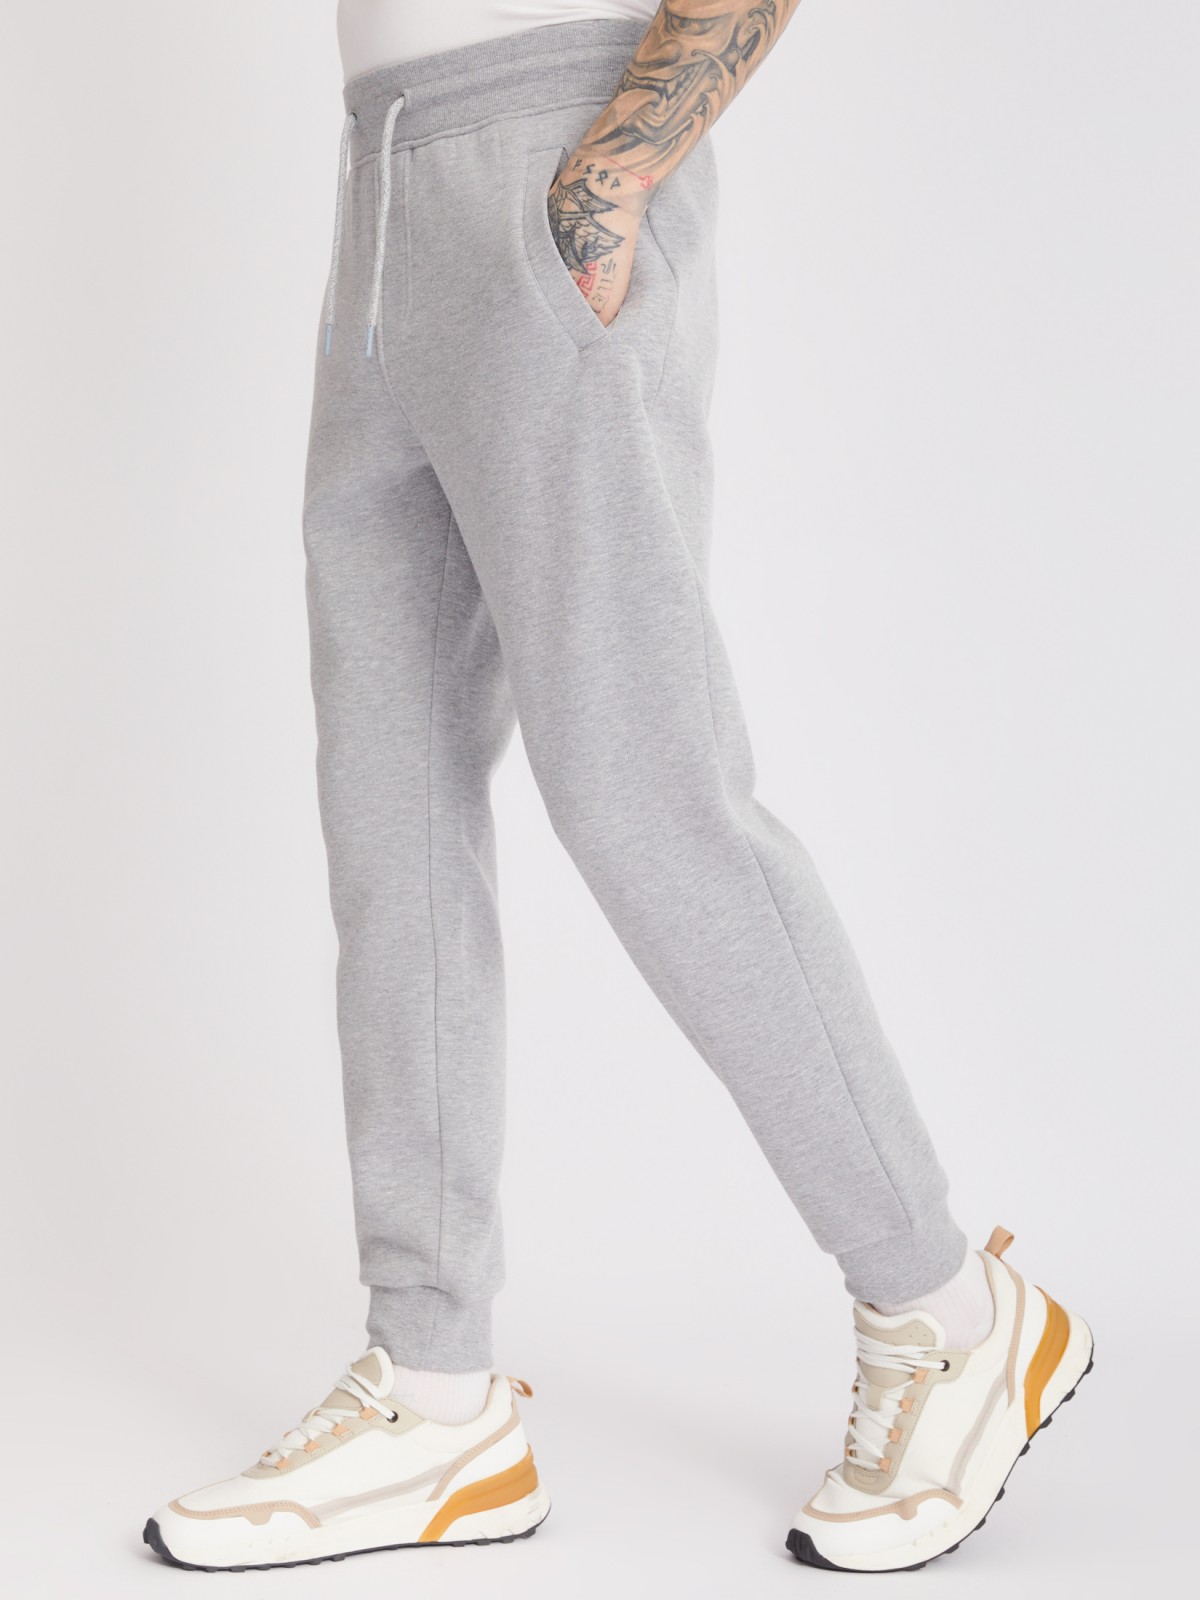 Утеплённые трикотажные брюки-джоггеры в спортивном стиле zolla 213337679012, цвет серый, размер S - фото 4